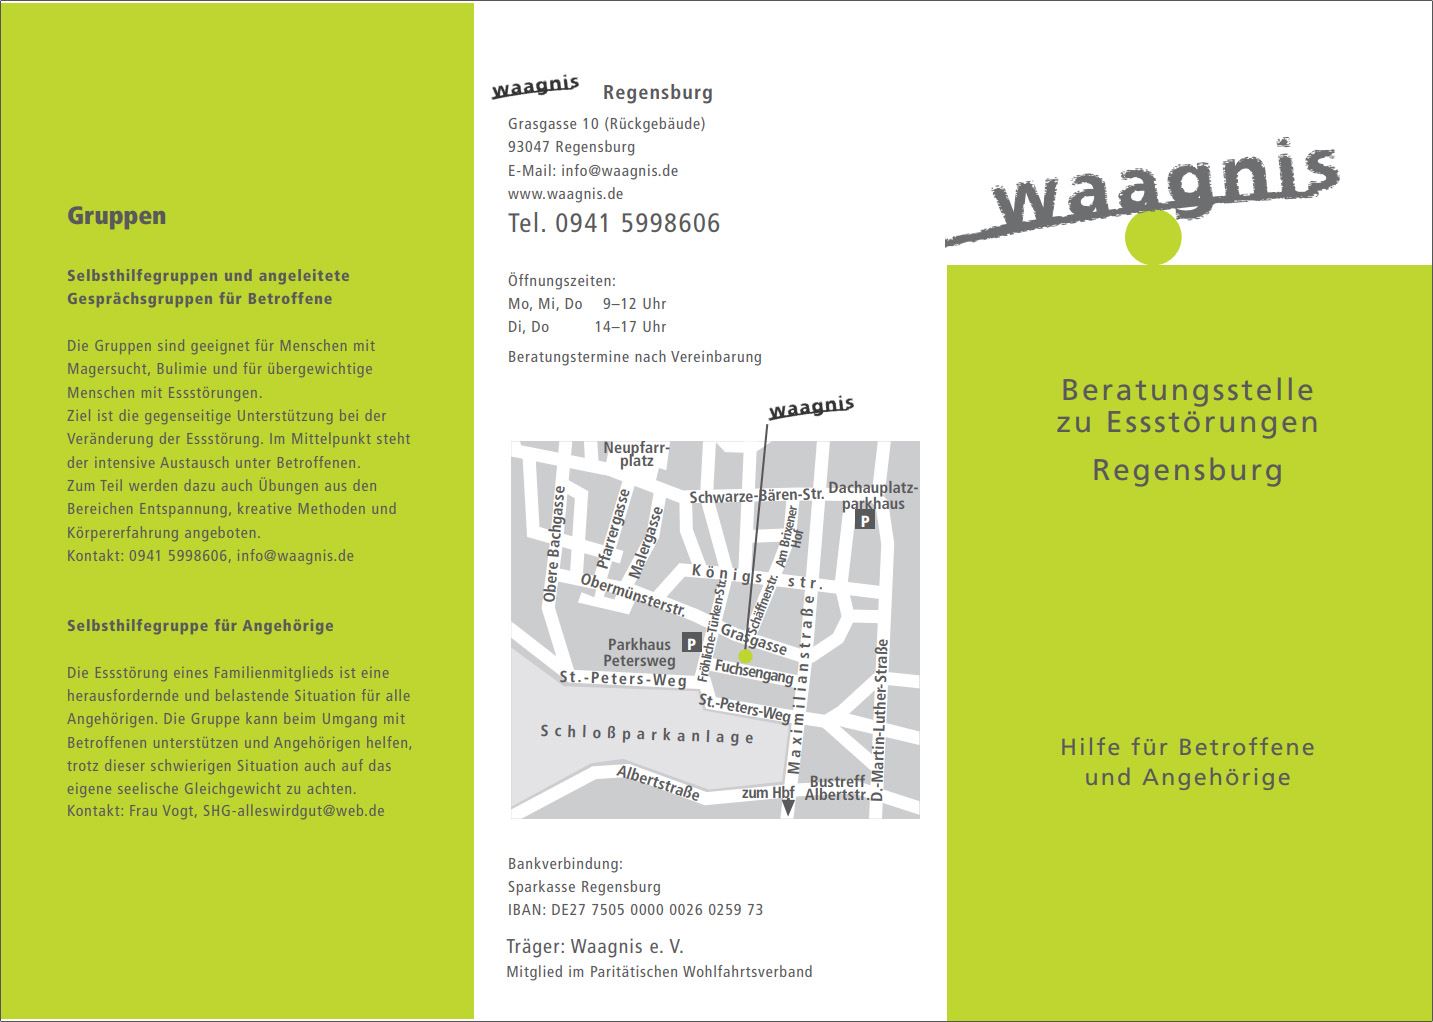 Flyer mit Informationen zu Gruppen und Kontaktmöglichkeiten in Regensburg